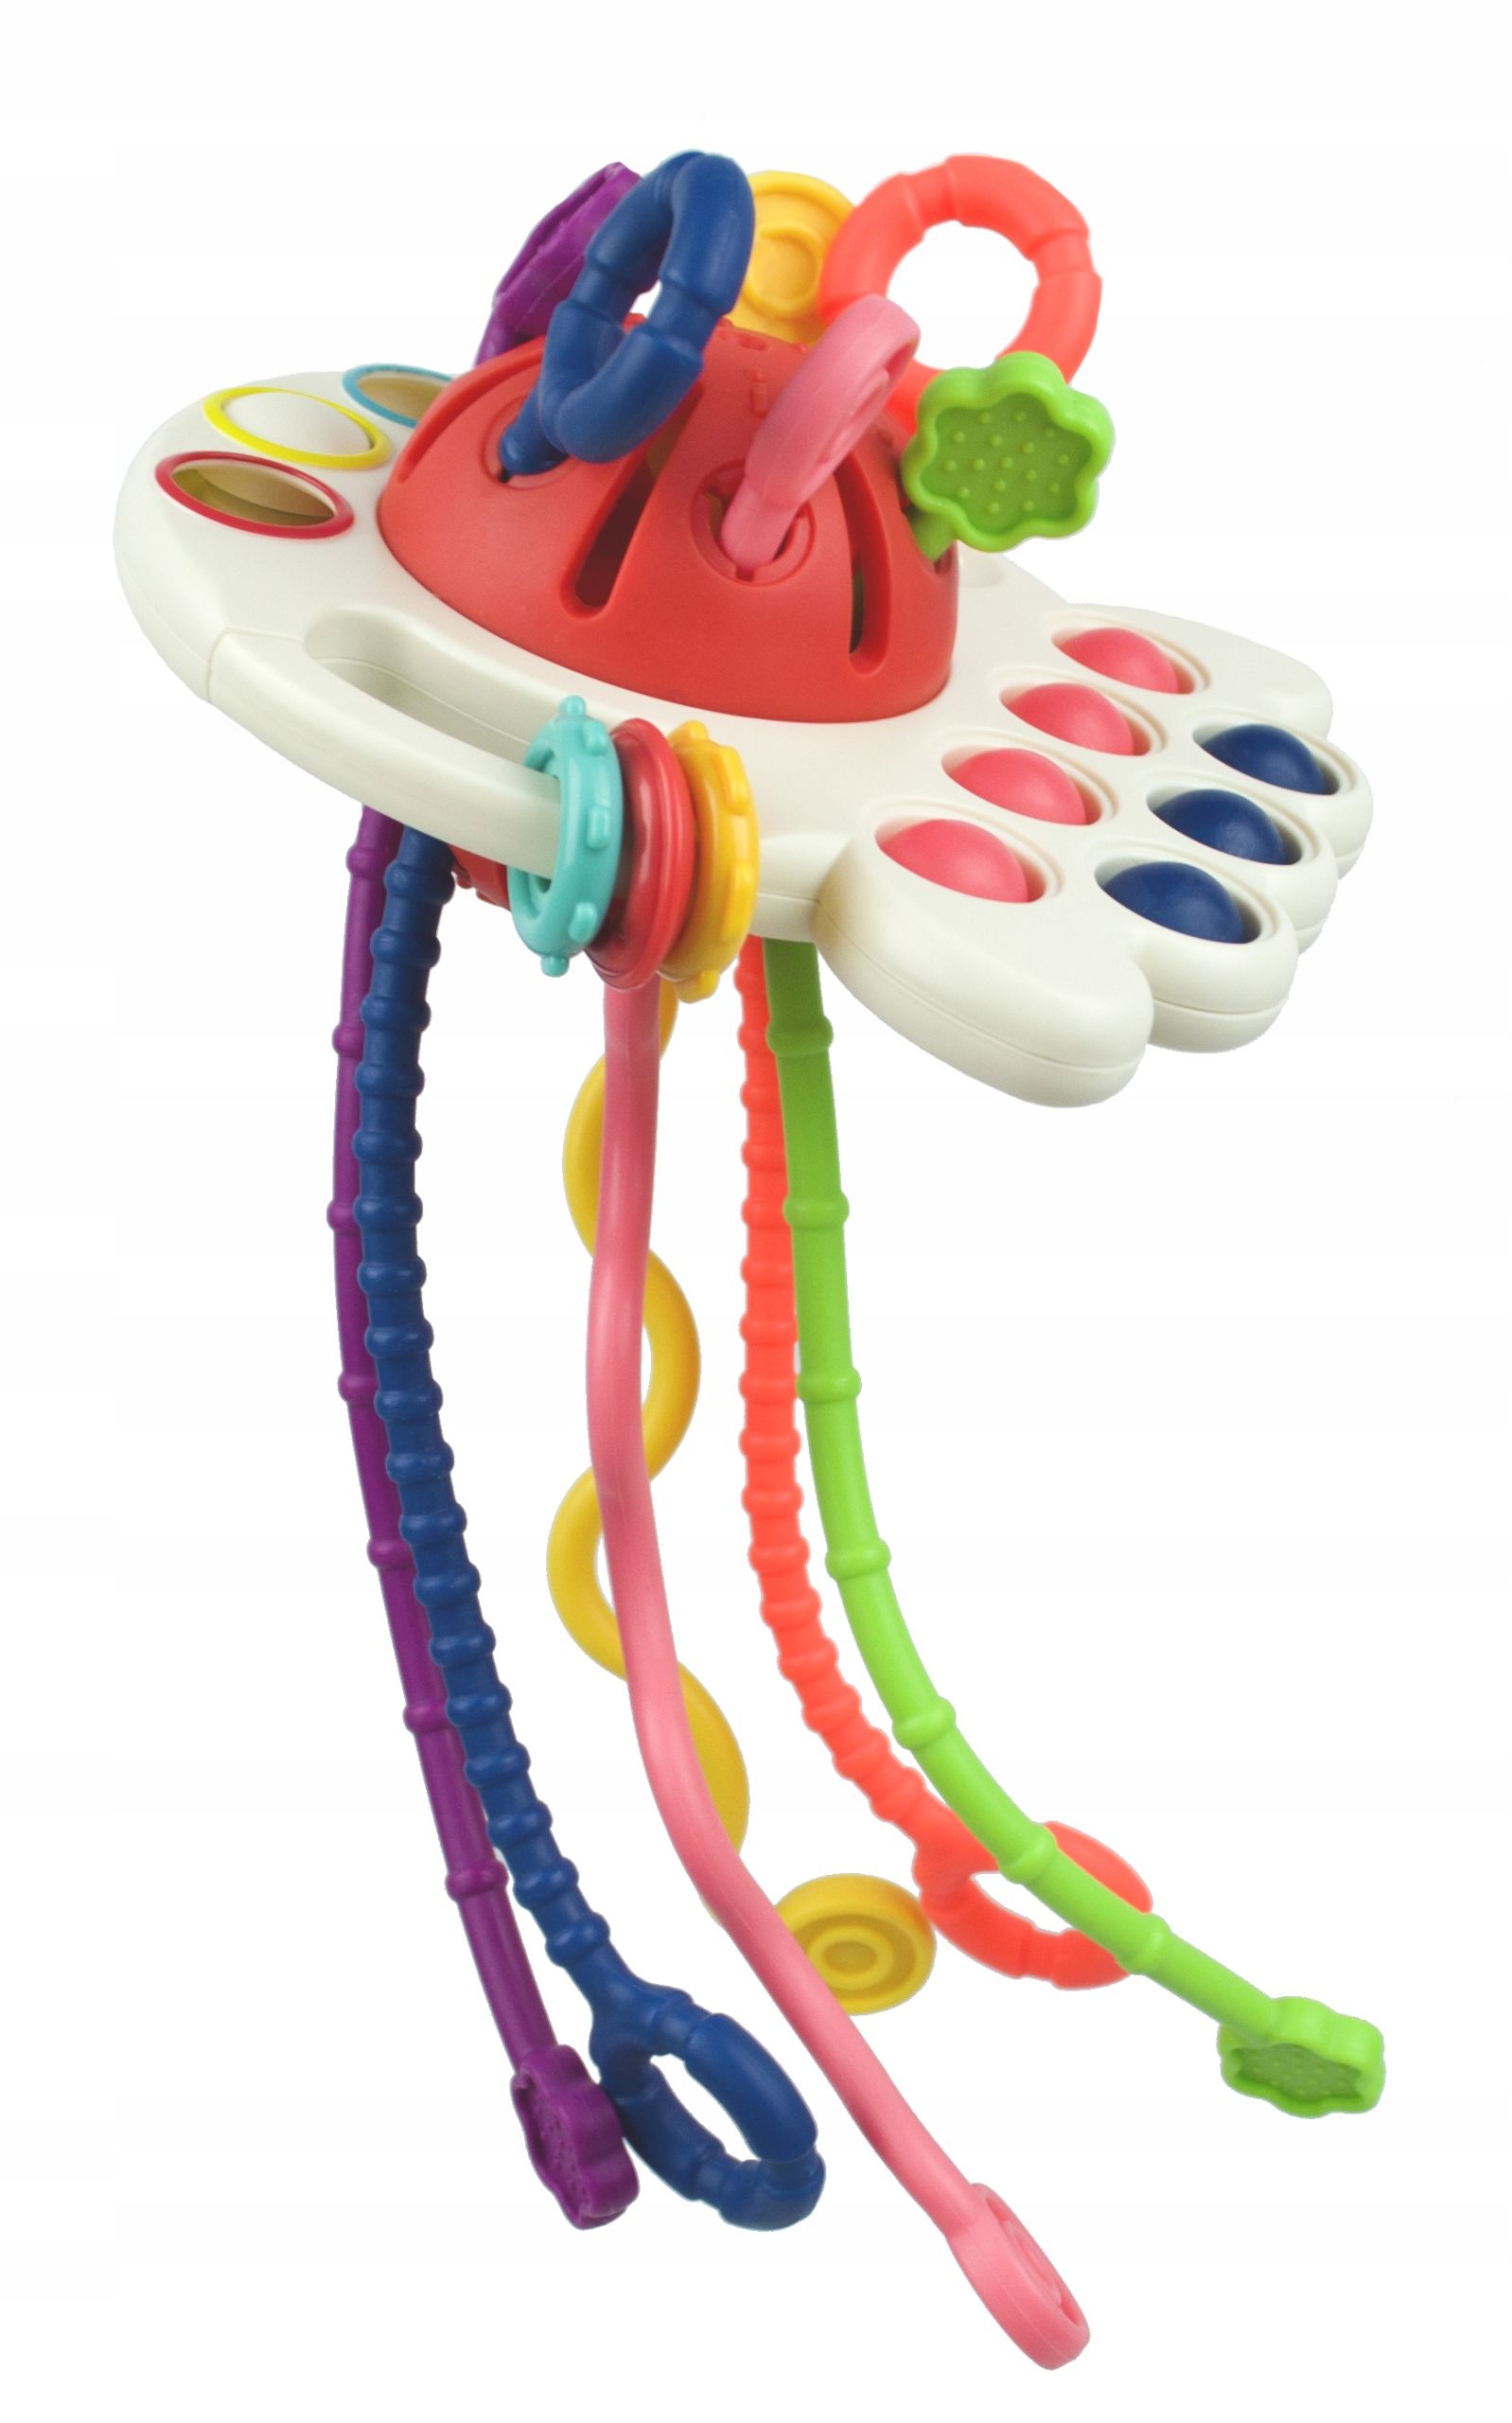 lt426 zabawka sensoryczna gryzak dla niemowląt krab montessori 4w1